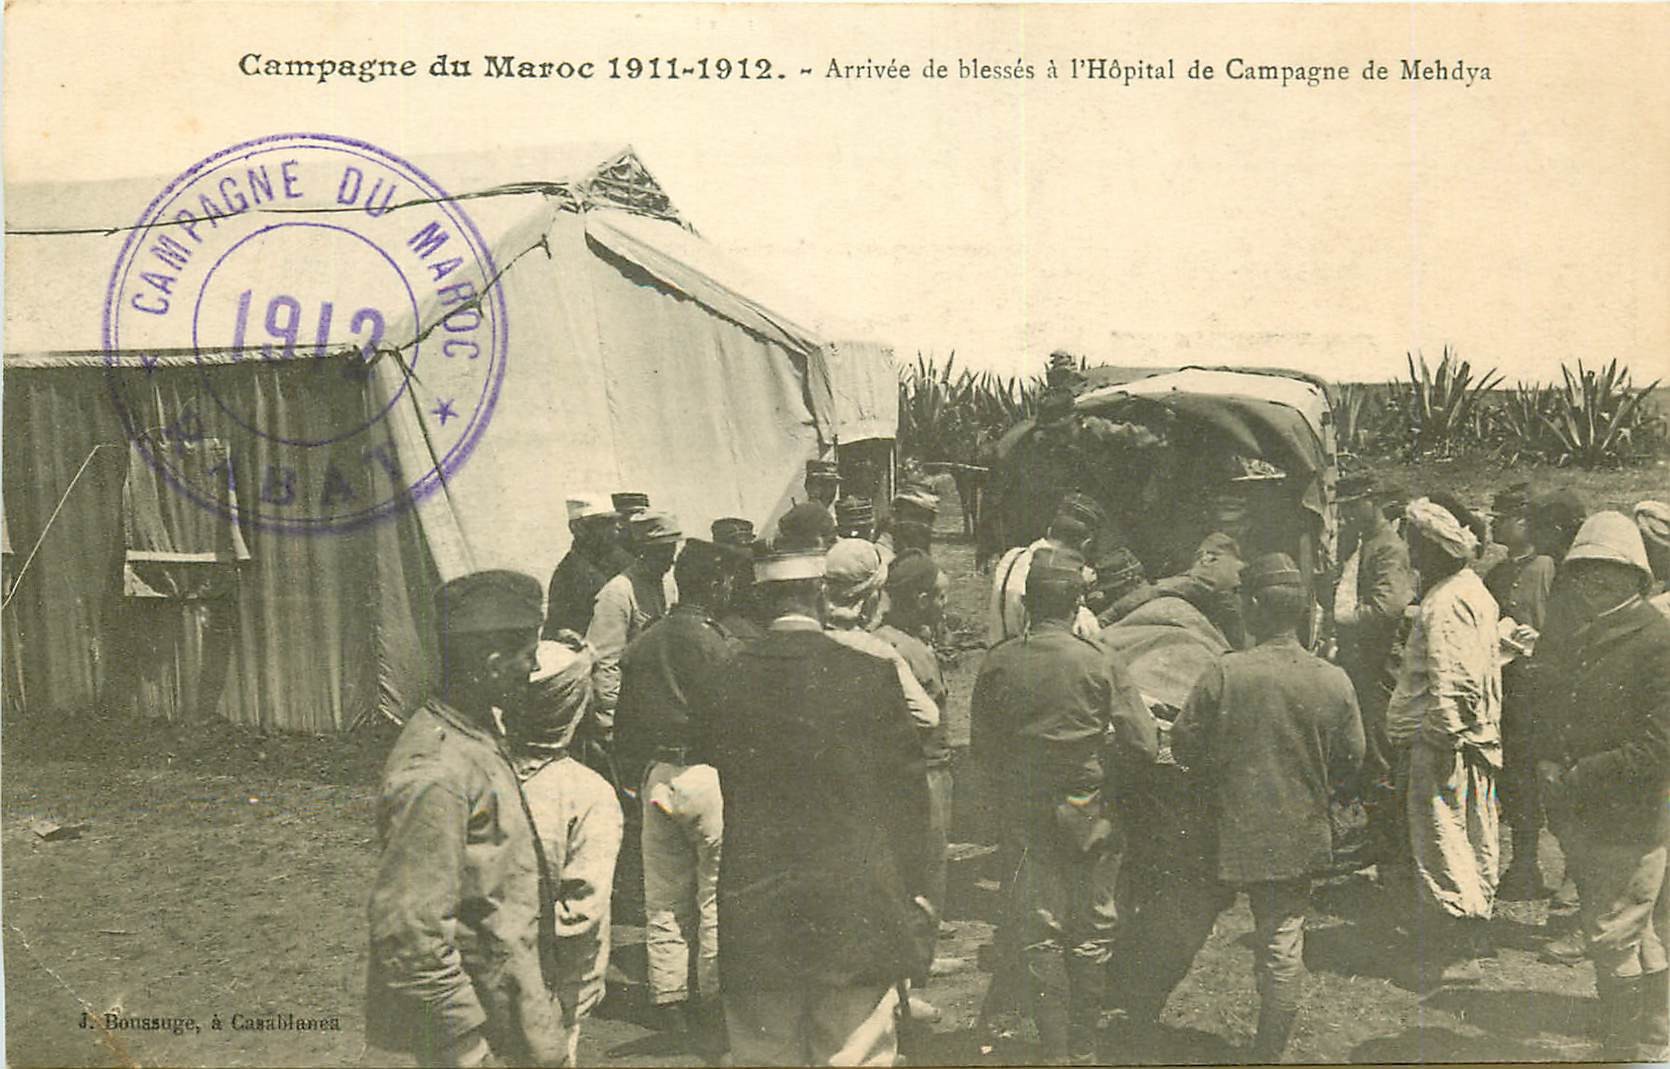 WW CAMPAGNE DU MAROC 1912. Arrivée de blessés Hôpital de Campagne de Mehdya